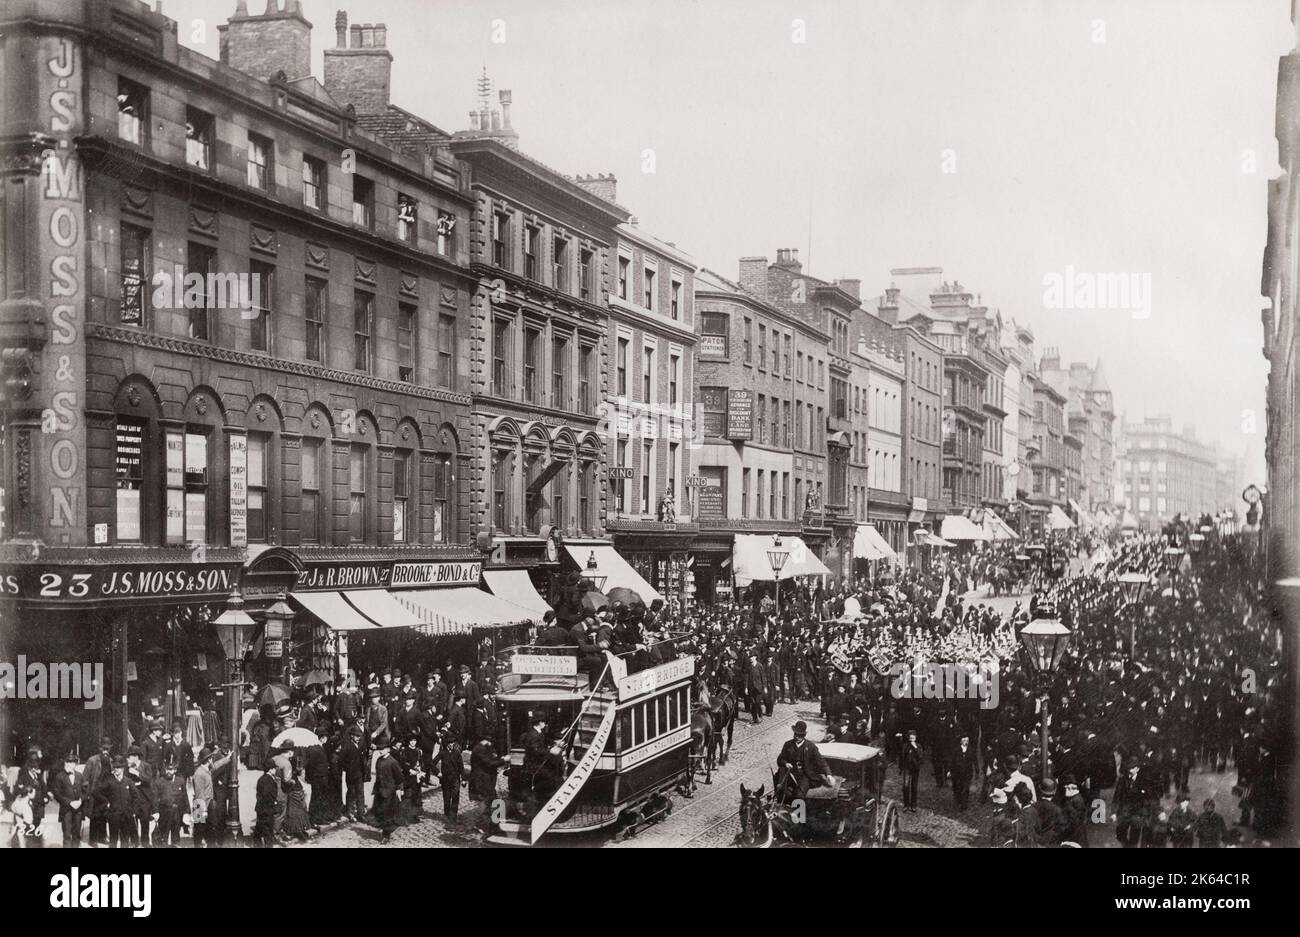 Photographie vintage du 19th siècle : procession dans une rue animée de Londres, piétons, tramways, bracelet en laiton. Image c.1890. Banque D'Images